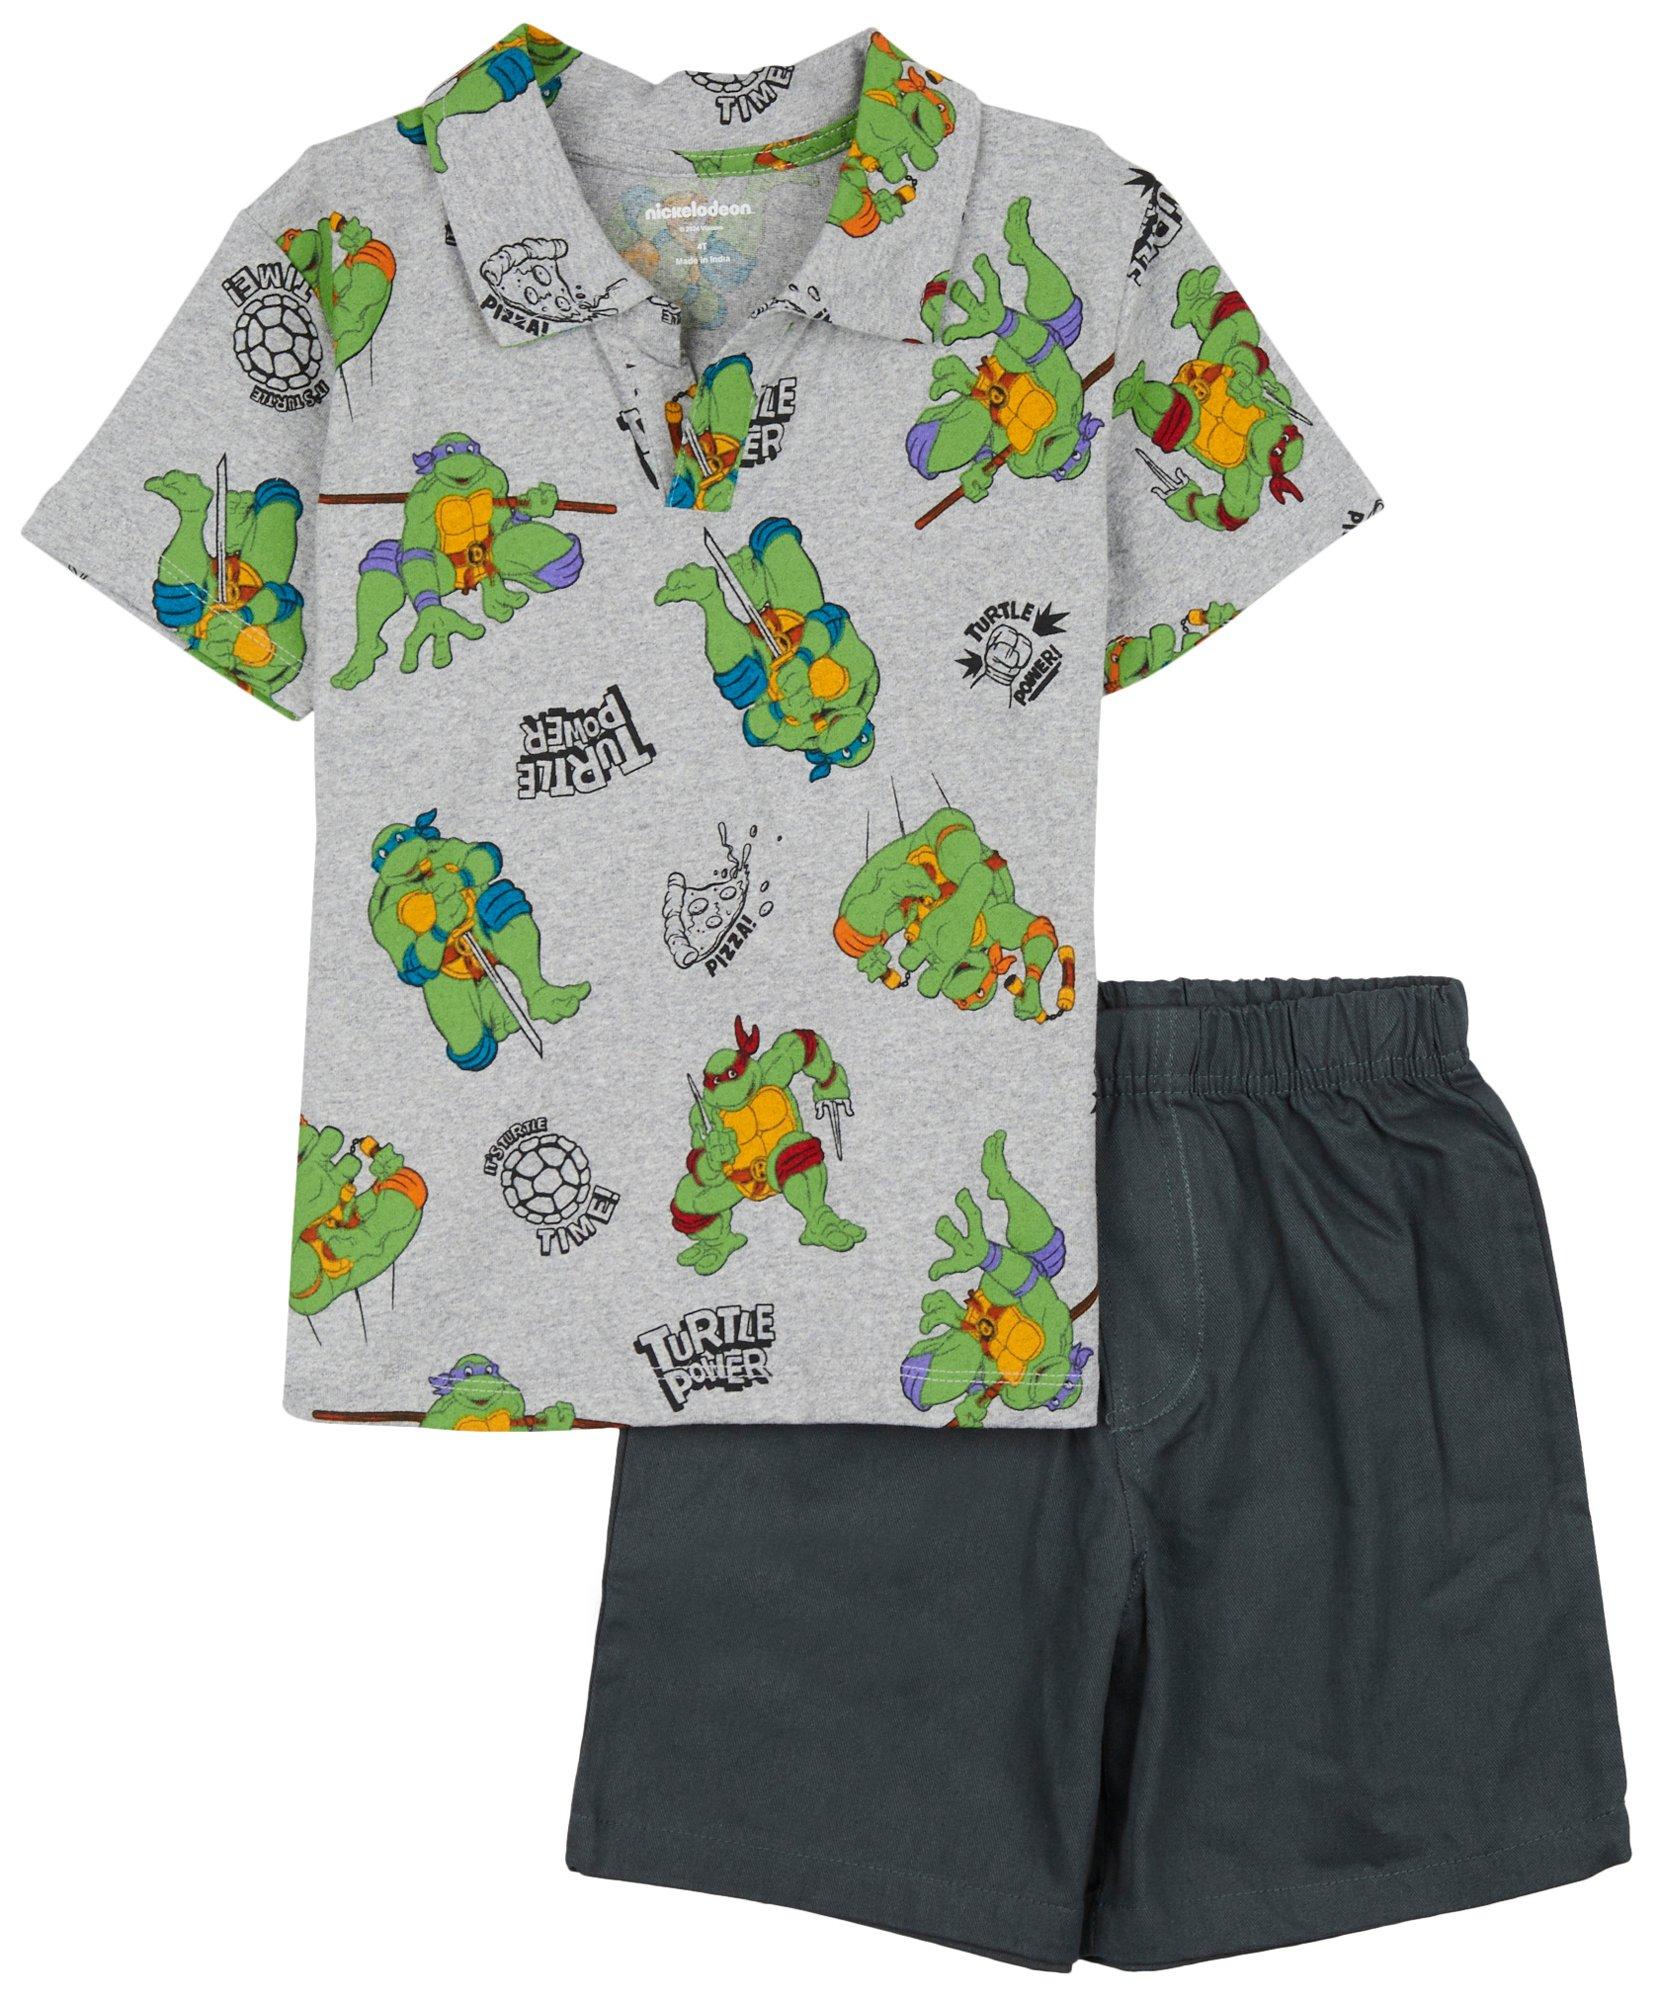 Nickelodeon 2pc. Toddler Boys Collar Knit T-Shirt Short Set